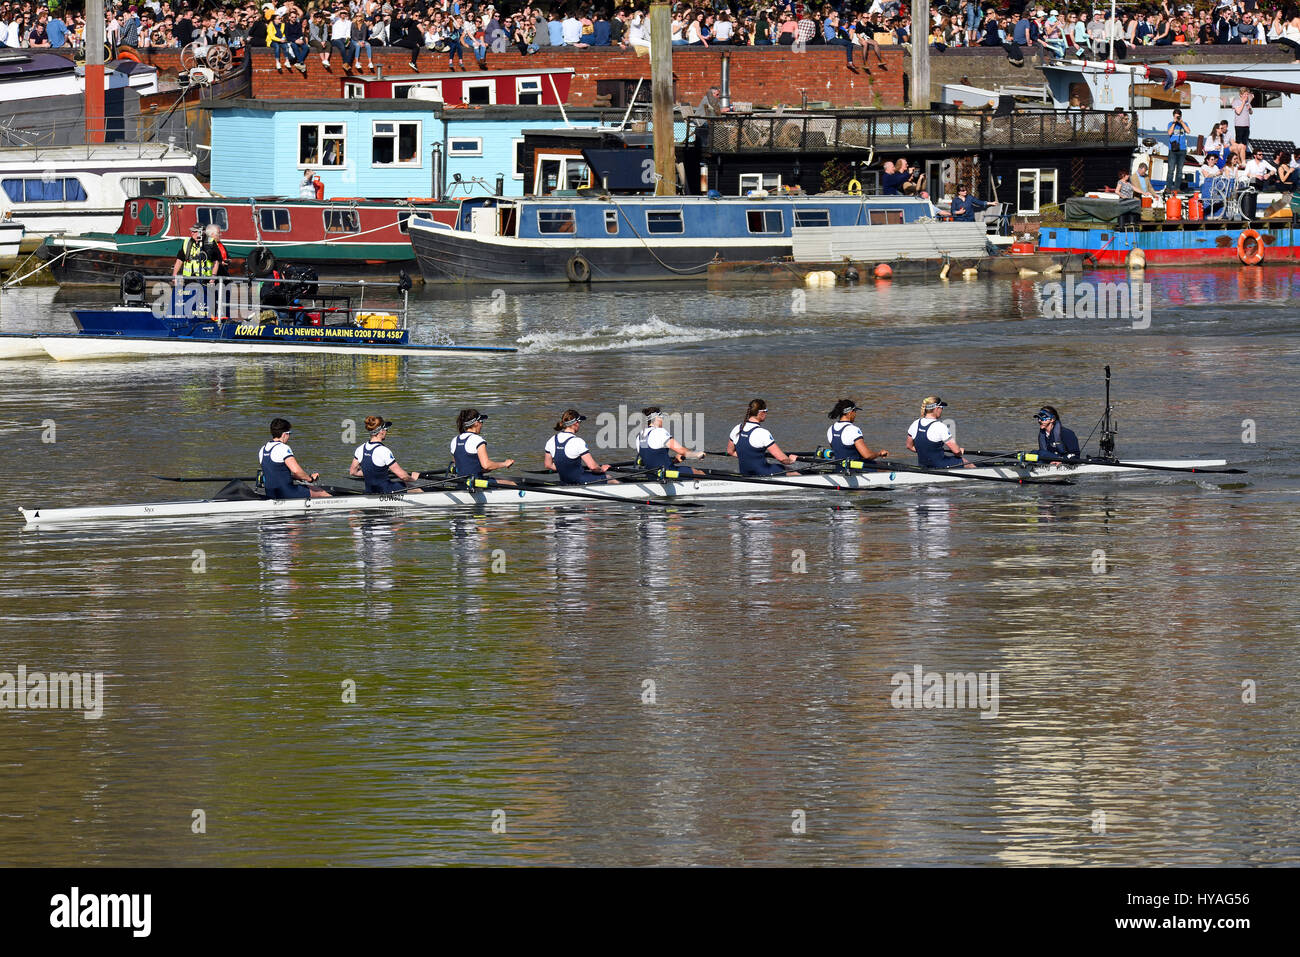 Oxford Frauen. Universität Boot Rennen auf der Themse bei Barnes, London. Women's Race Oxford und Cambridge, Cambridge gewonnen. Stockfoto